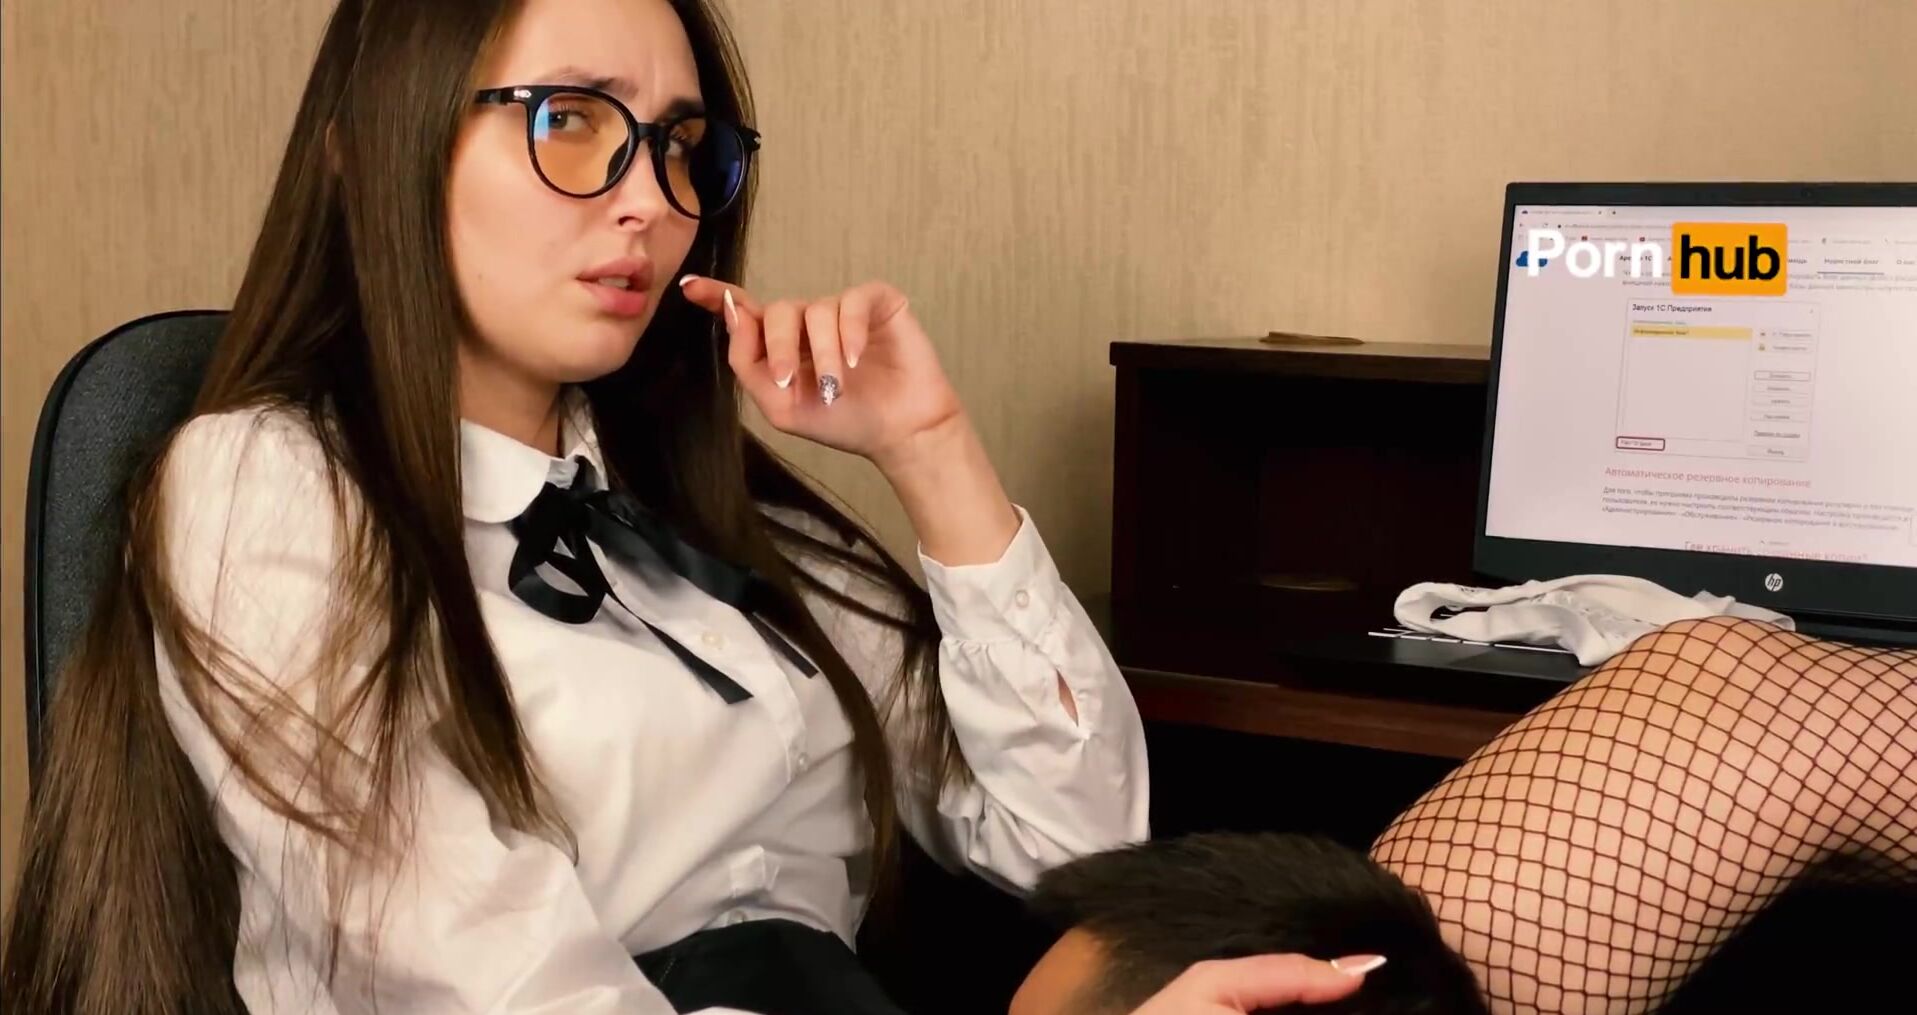 Босс лижет секретарше. Смотреть русское порно видео онлайн